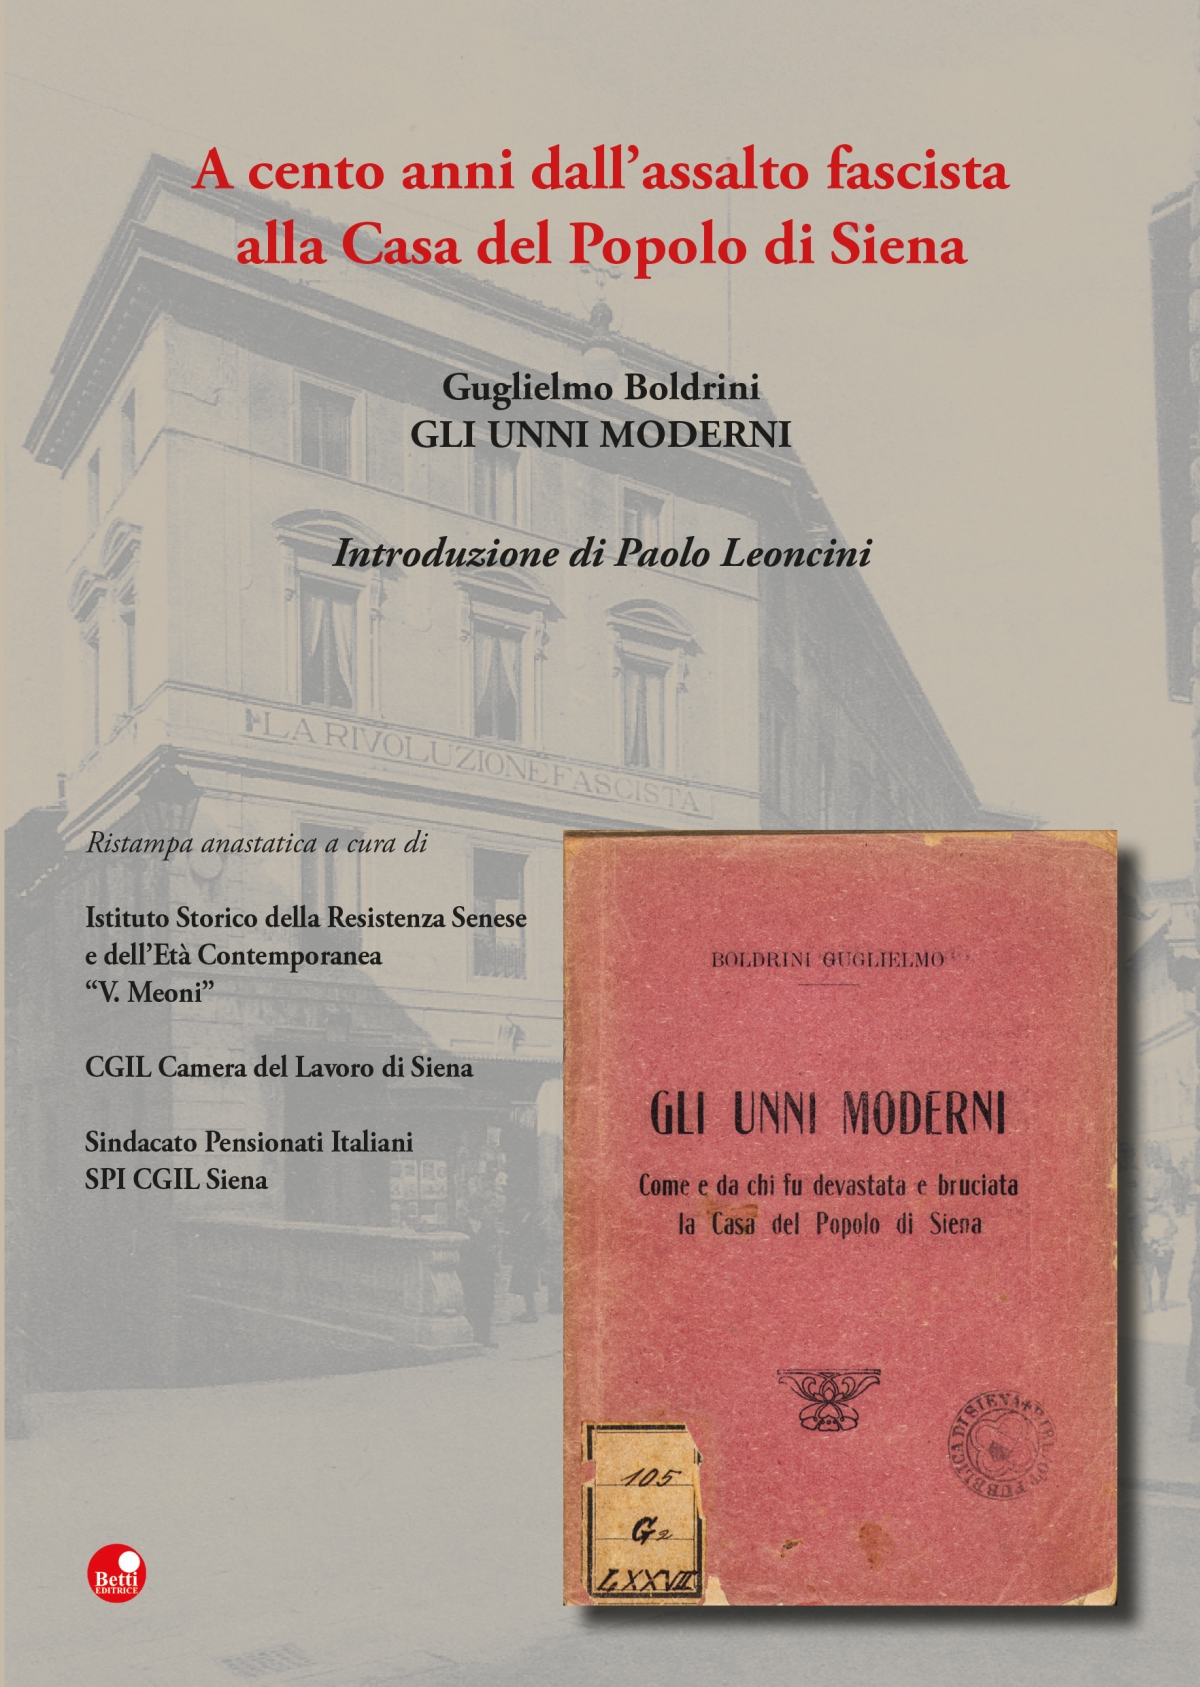 Gli Unni moderni. A cento anni dall'assalto fascista alla Casa del Popolo di Siena